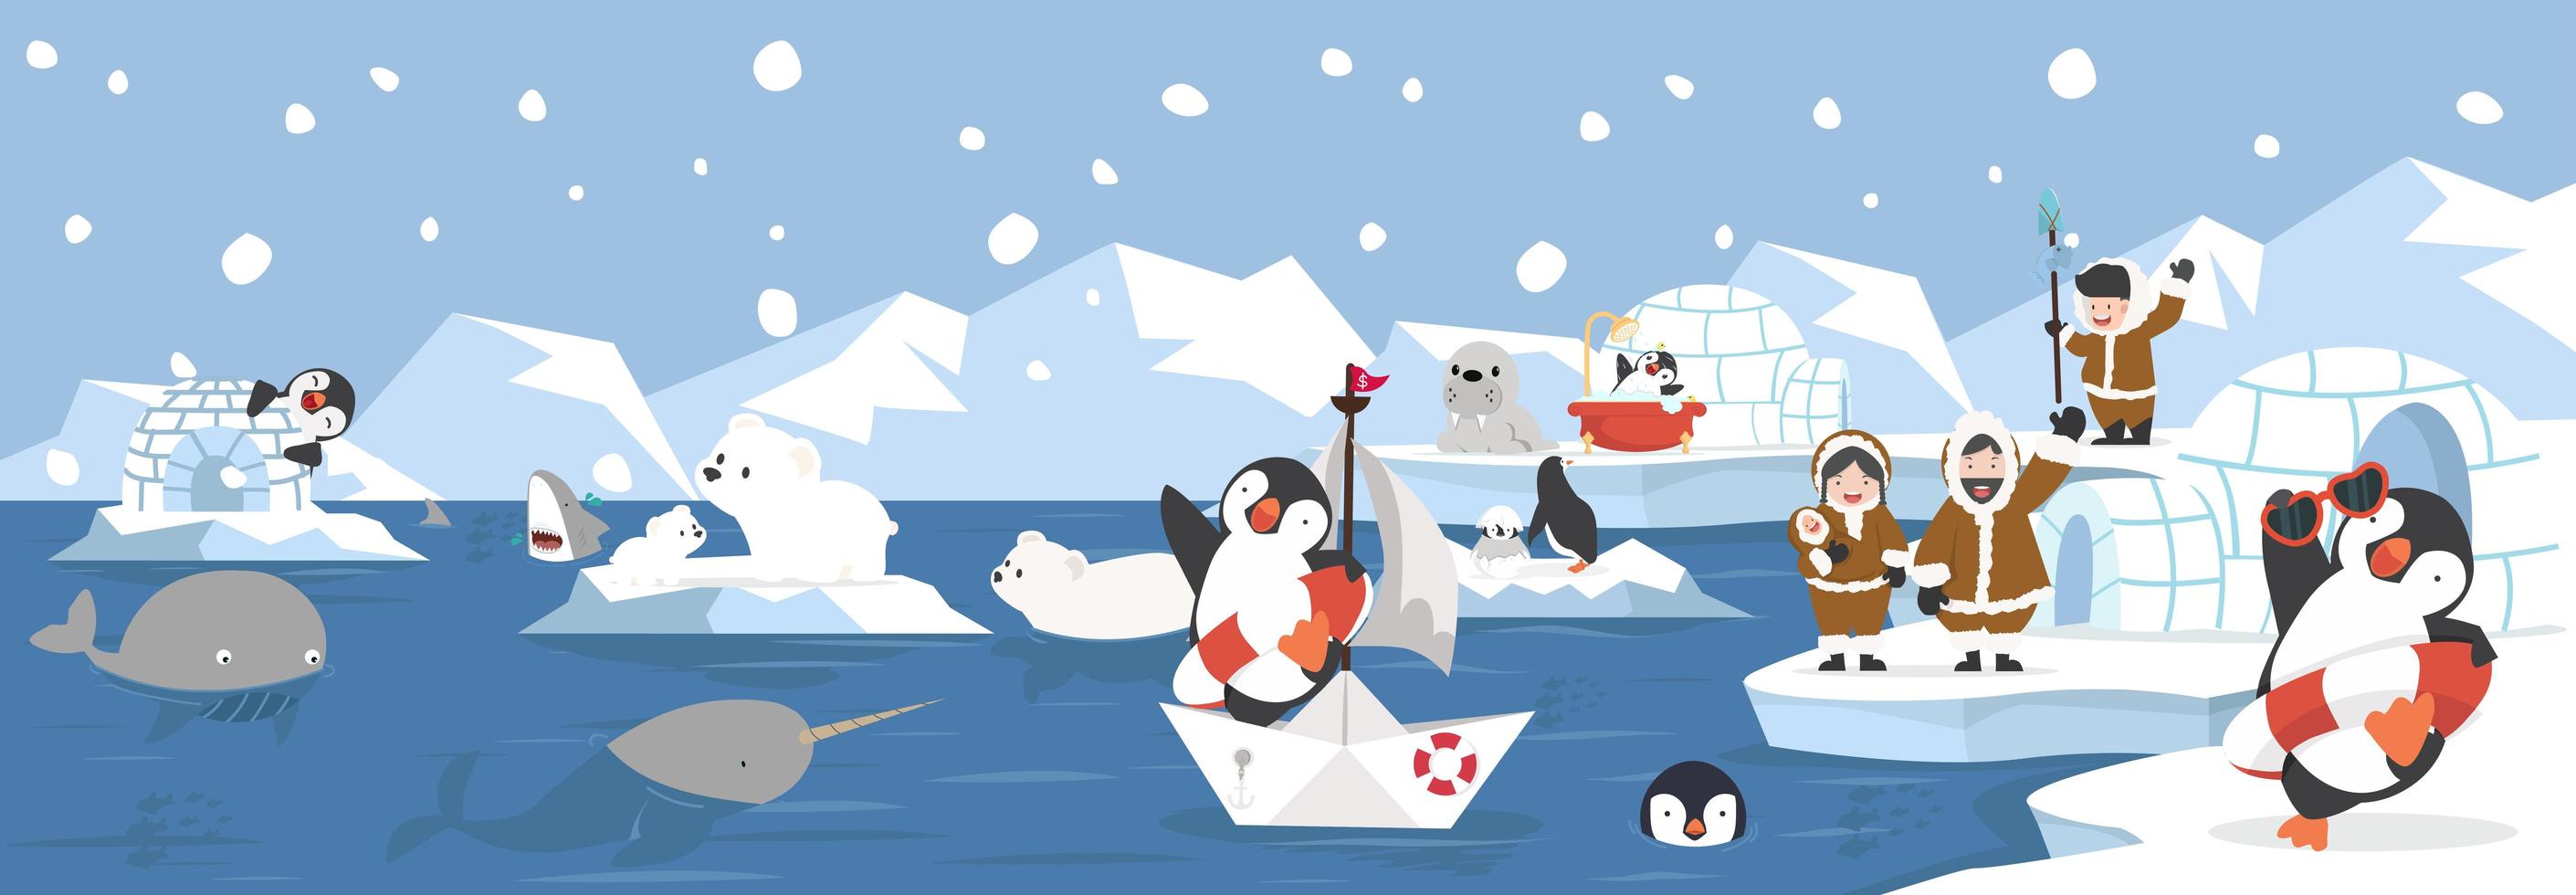 paisaje ártico de dibujos animados con animales y banner de personas inuit vector